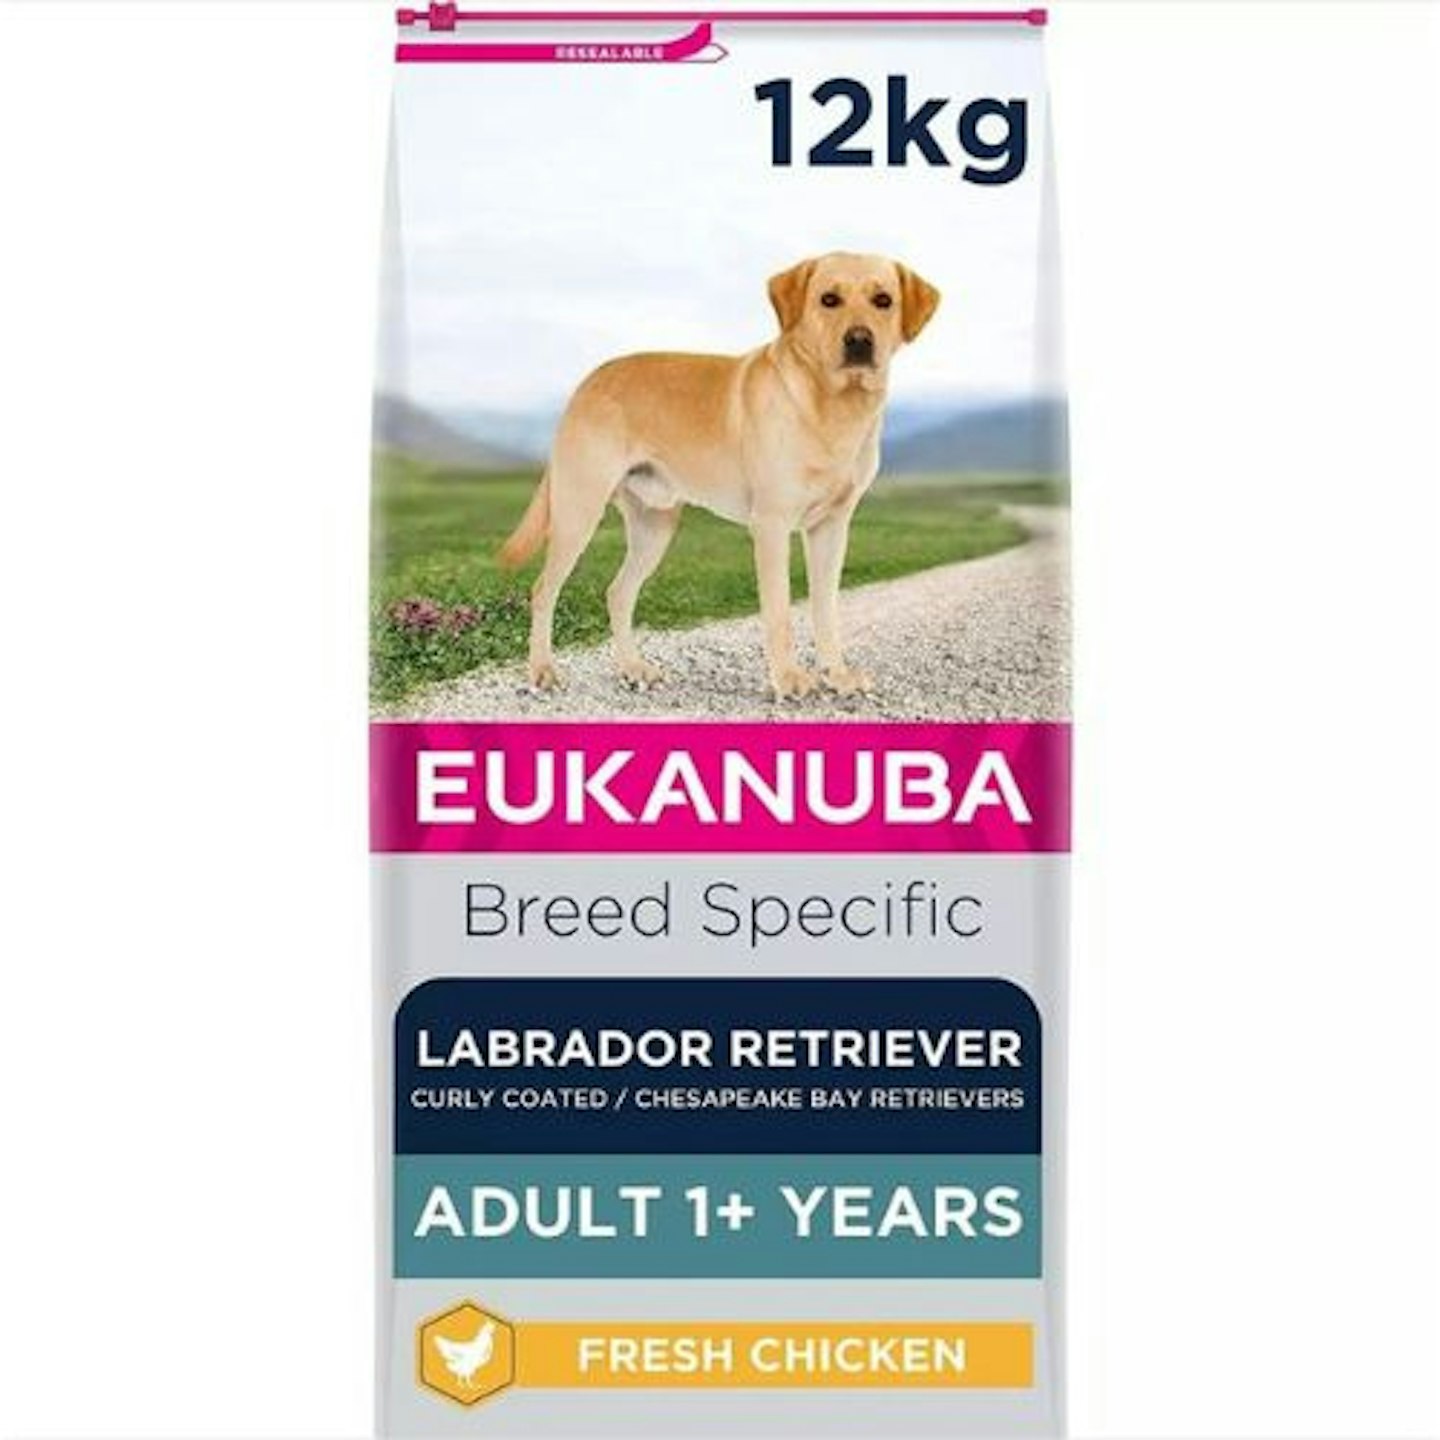 Eukanuba Complete Dry Dog Food for Adult Labrador Retriever